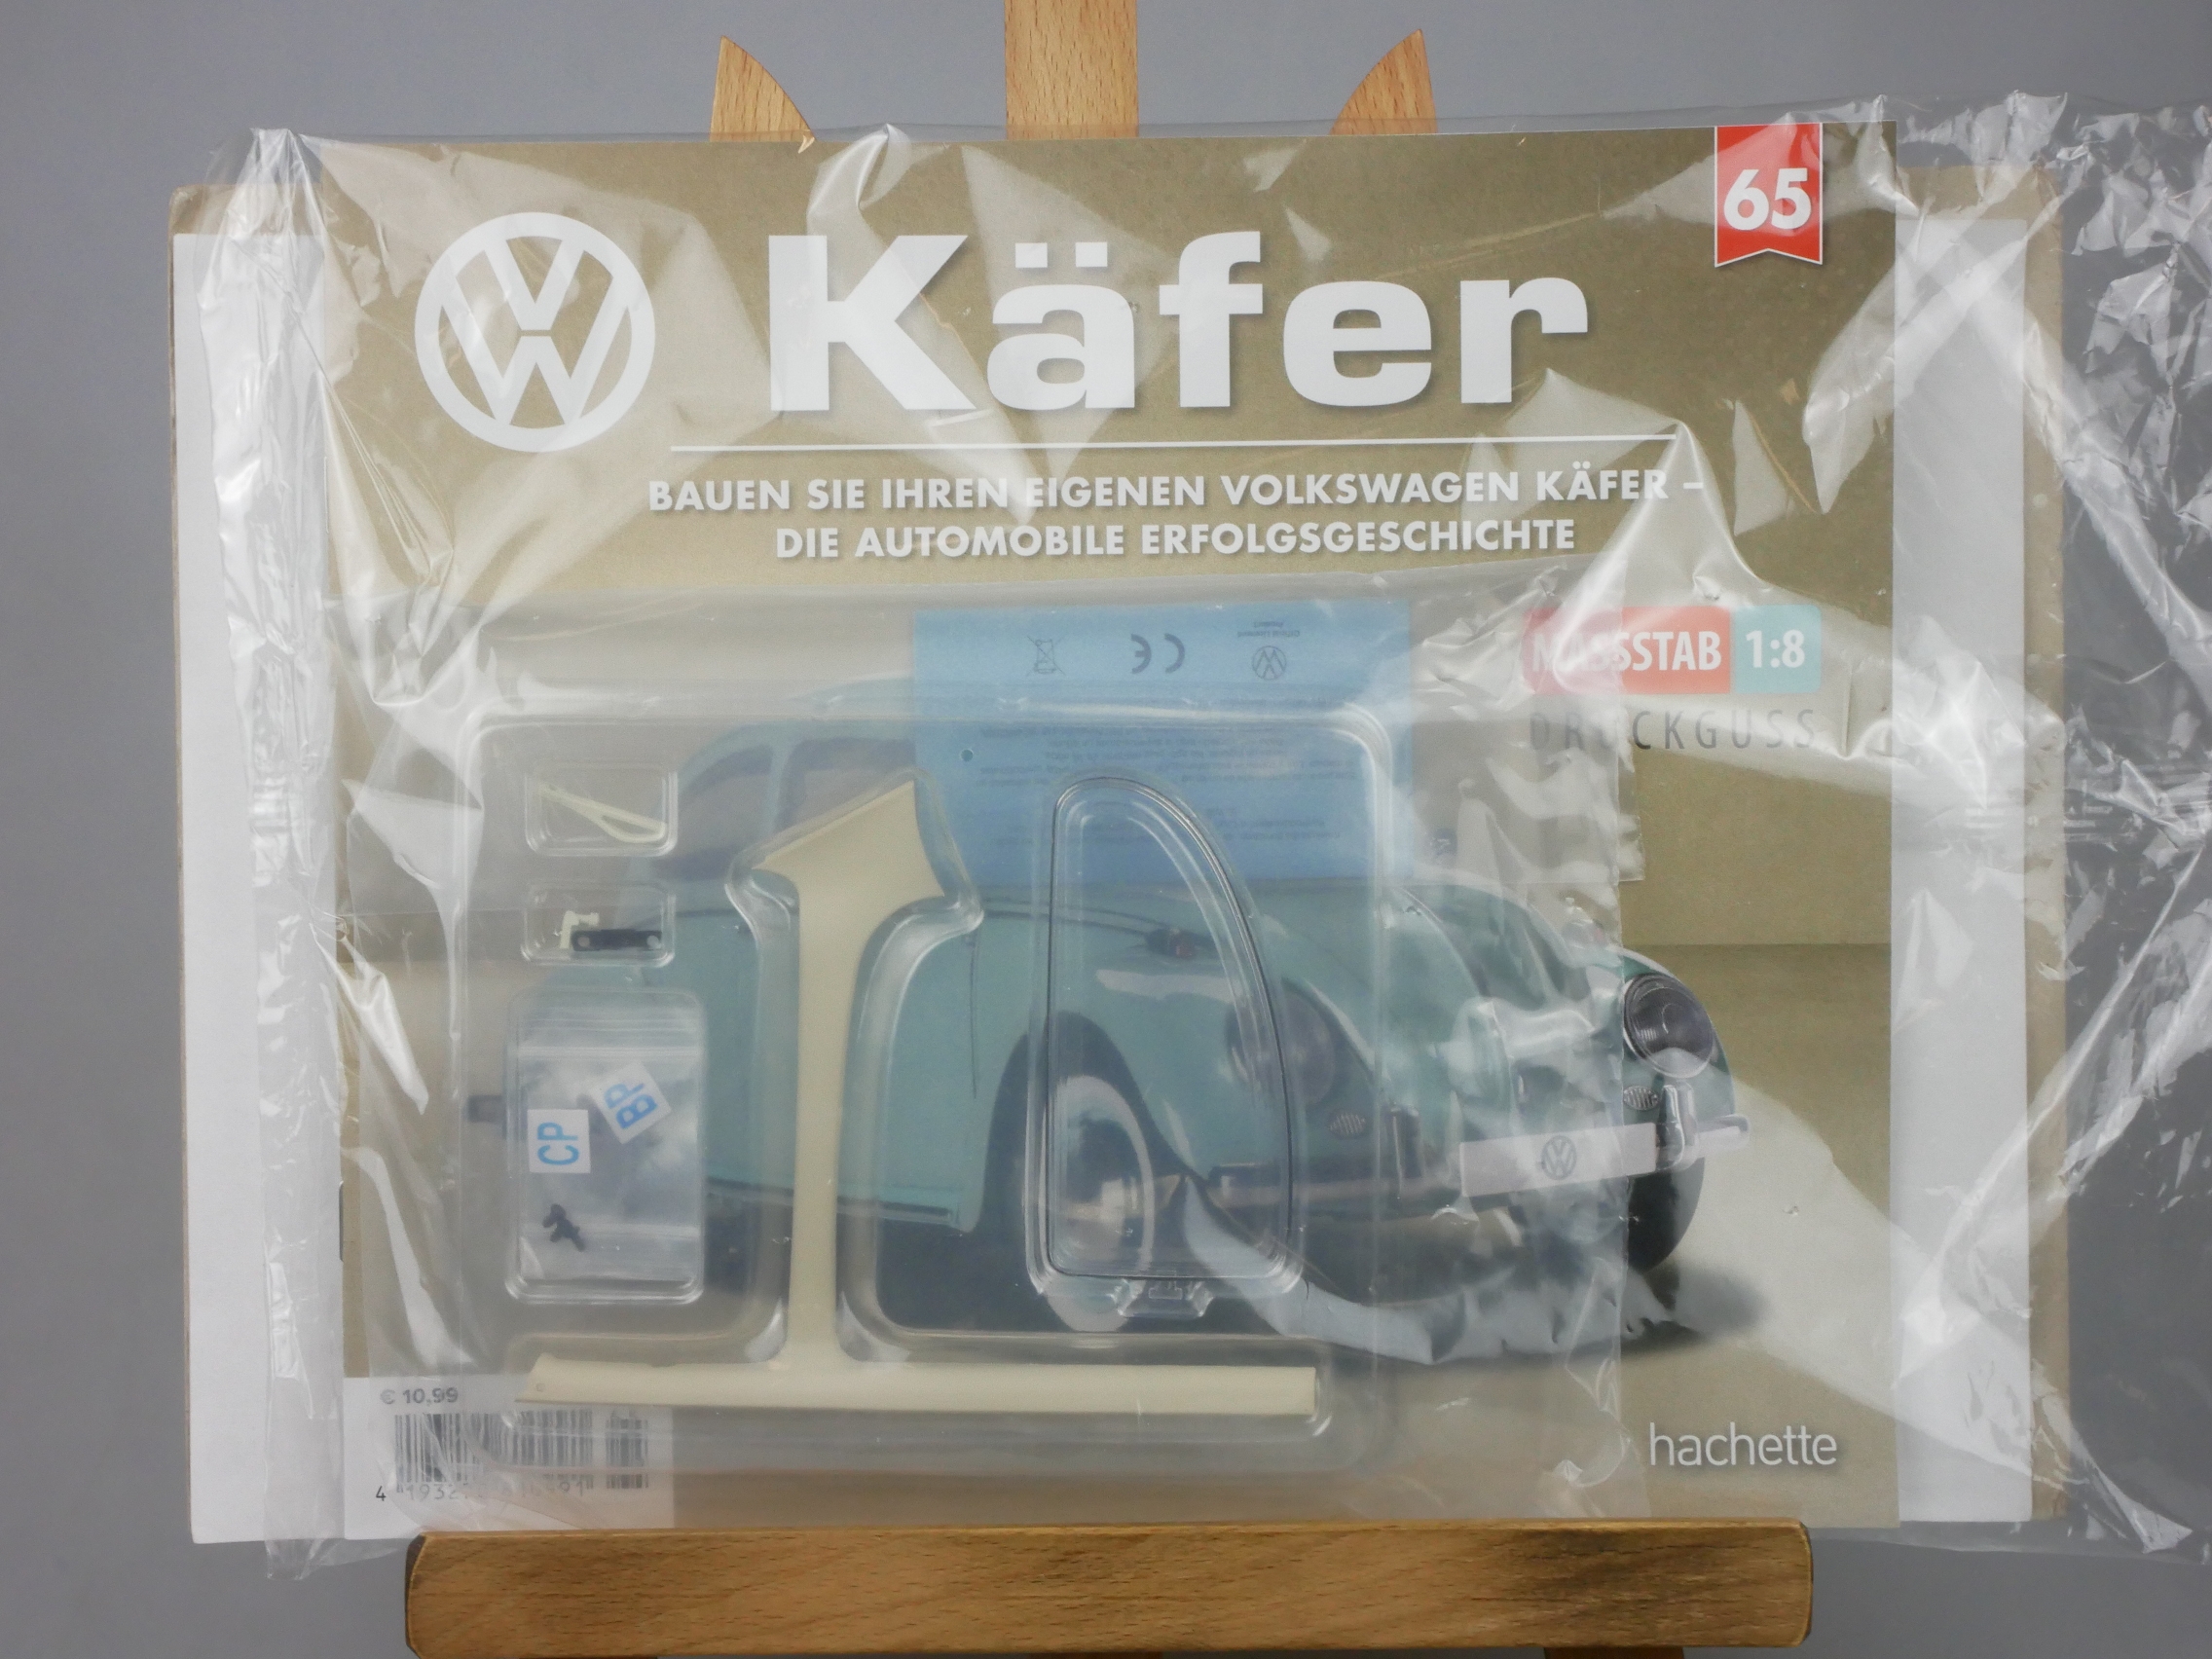  Ausgabe 65 Volkswagen VW Käfer 1/8 Hachette - 126432